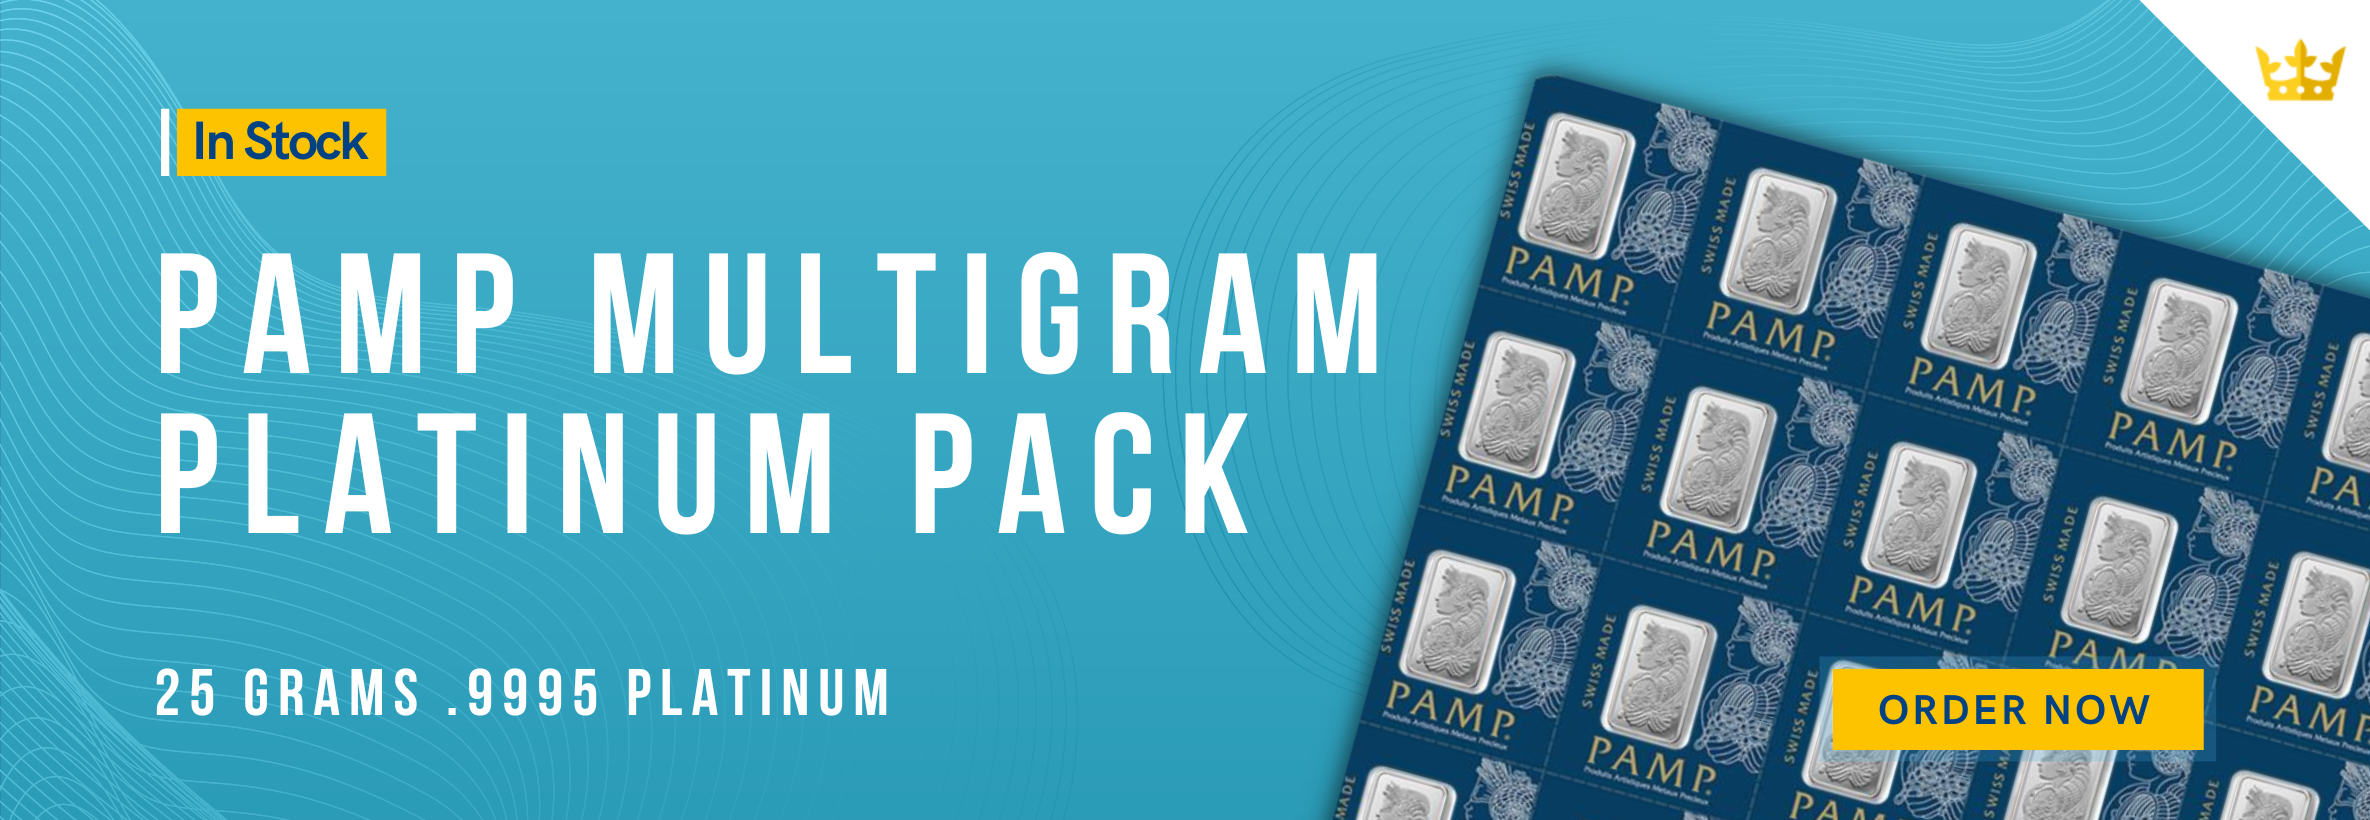 PAMP Multigram 25g platinum bar